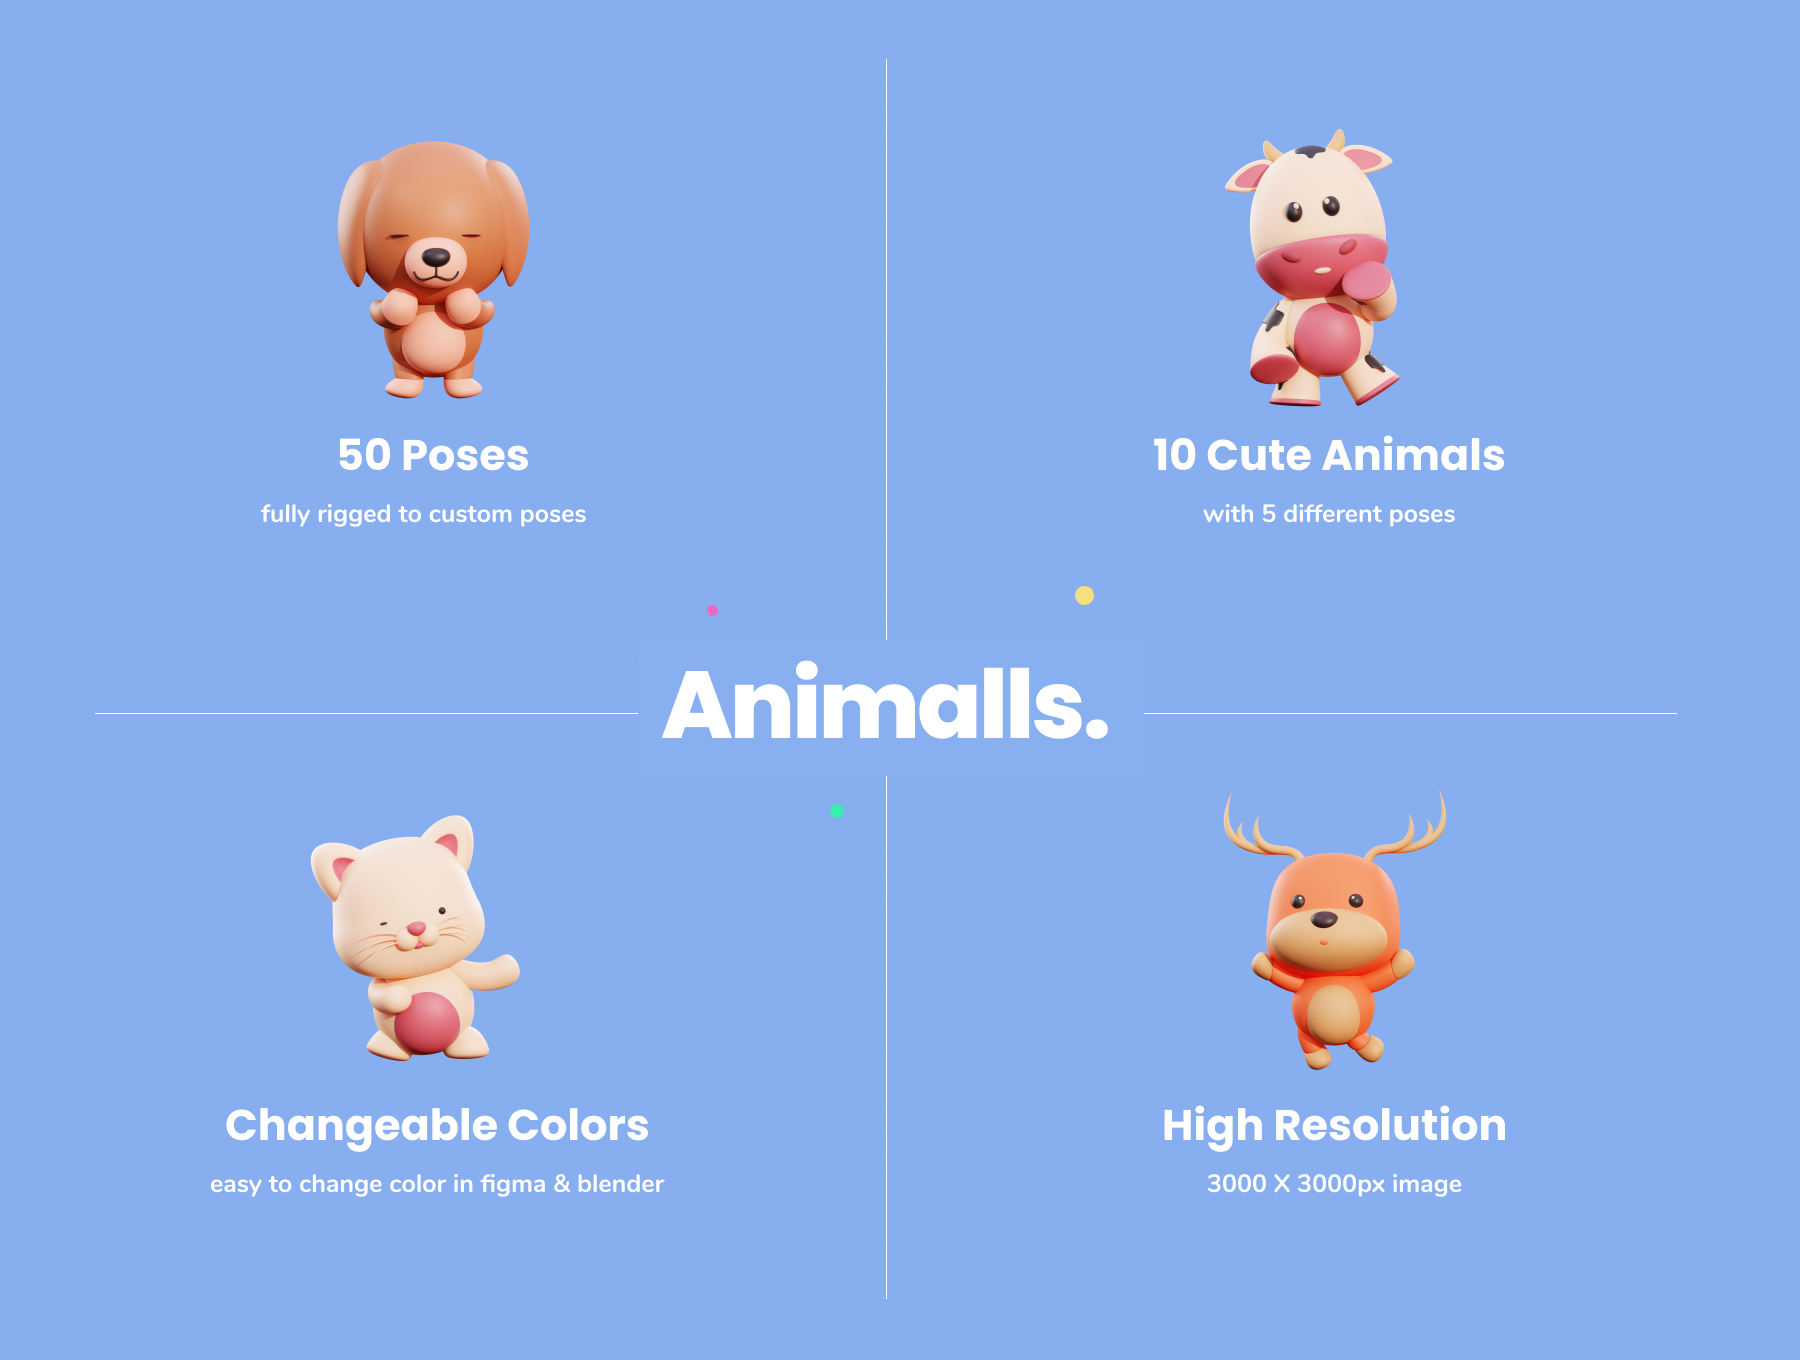 Q版卡通3D可爱动物角色插画素材 Animalls - 3D Cute Illustration Pack-酷社 (KUSHEW)